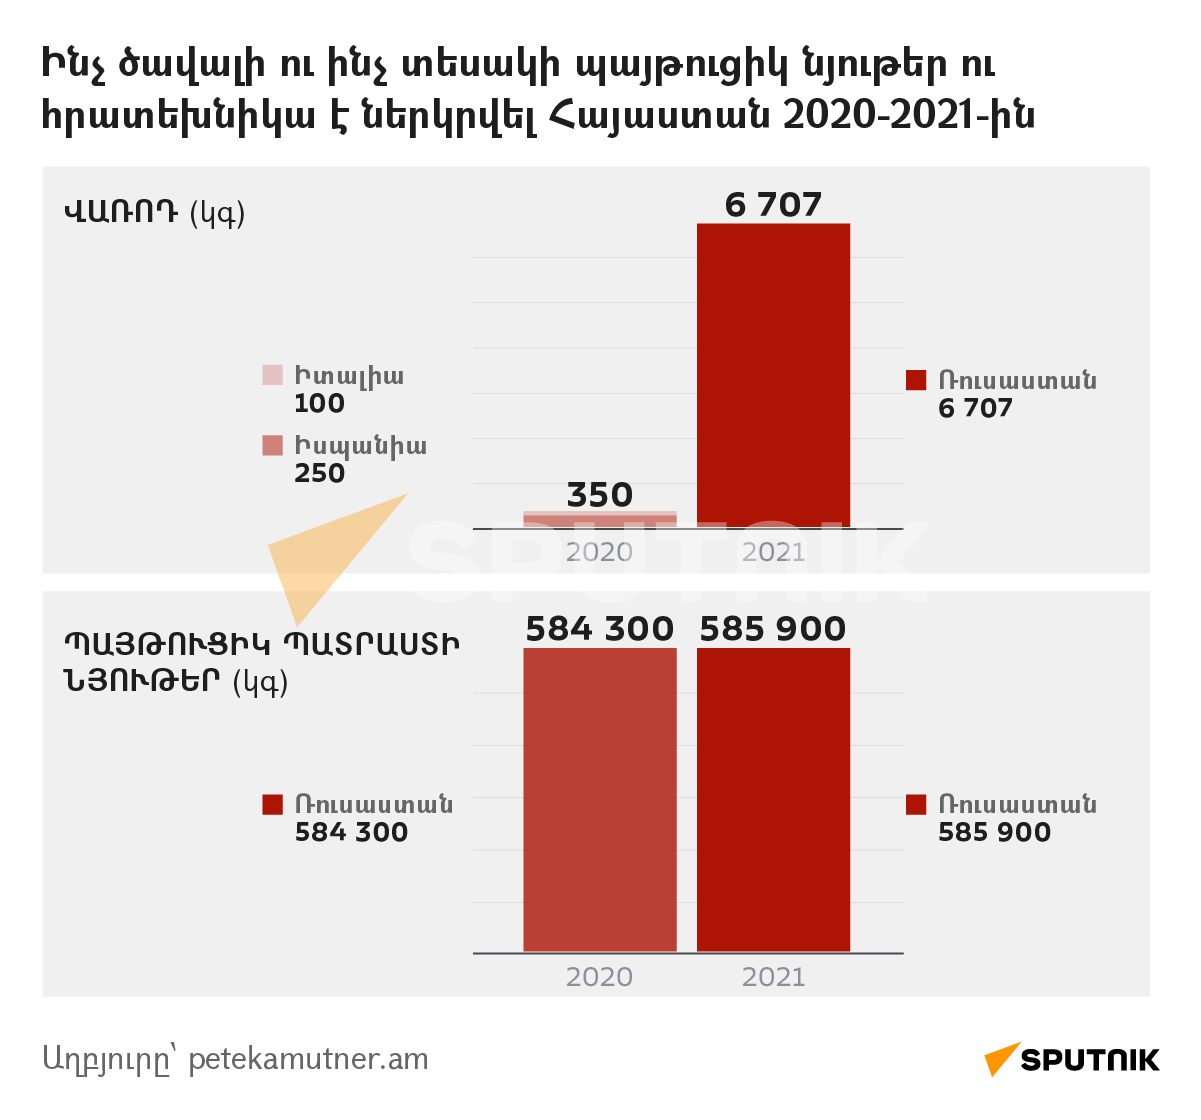 Ինչ ծավալի ու ինչ տեսակի պայթուցիկ նյութեր ու հրատեխնիկա է ներկրվել Հայաստան 2020-2021-ին - Sputnik Արմենիա